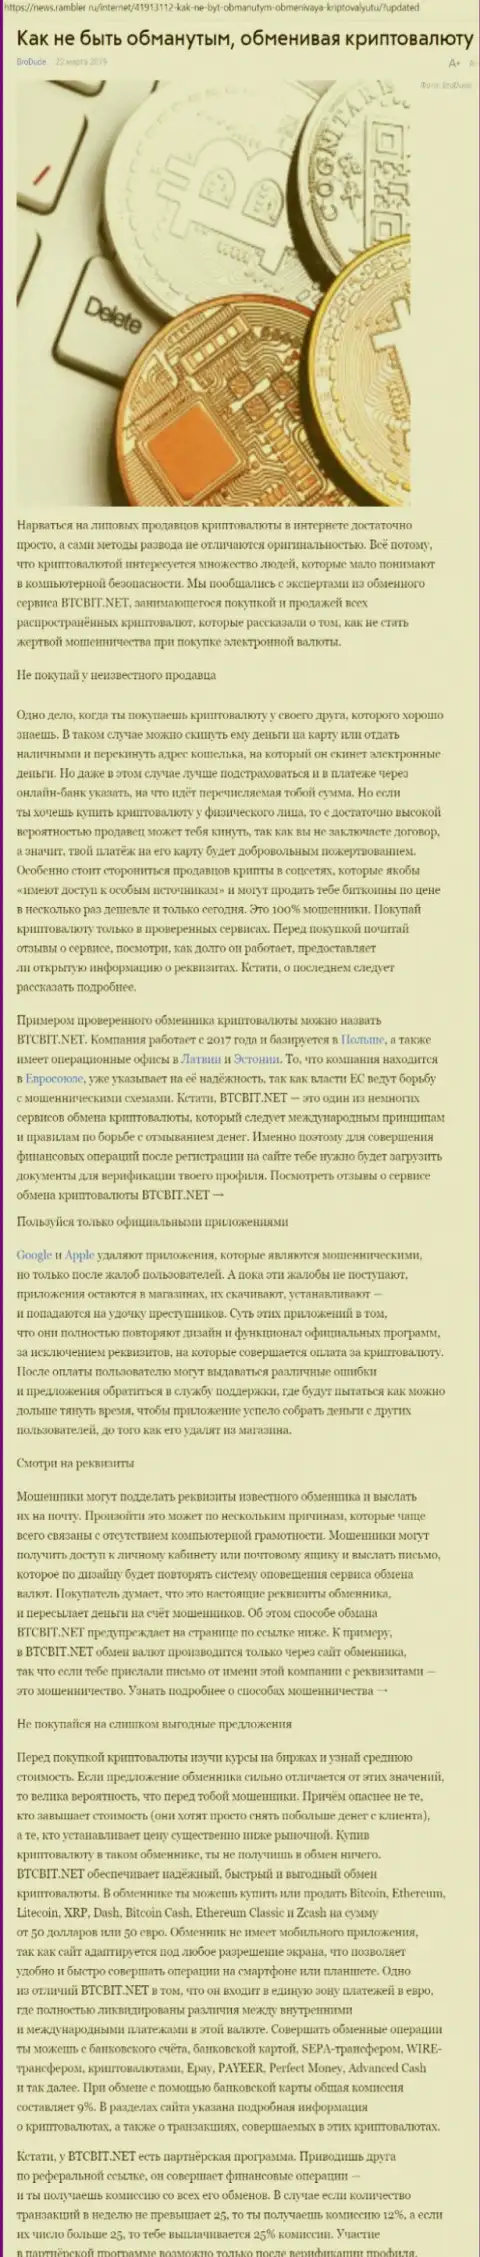 Публикация о БТЦБИТ на news rambler ru